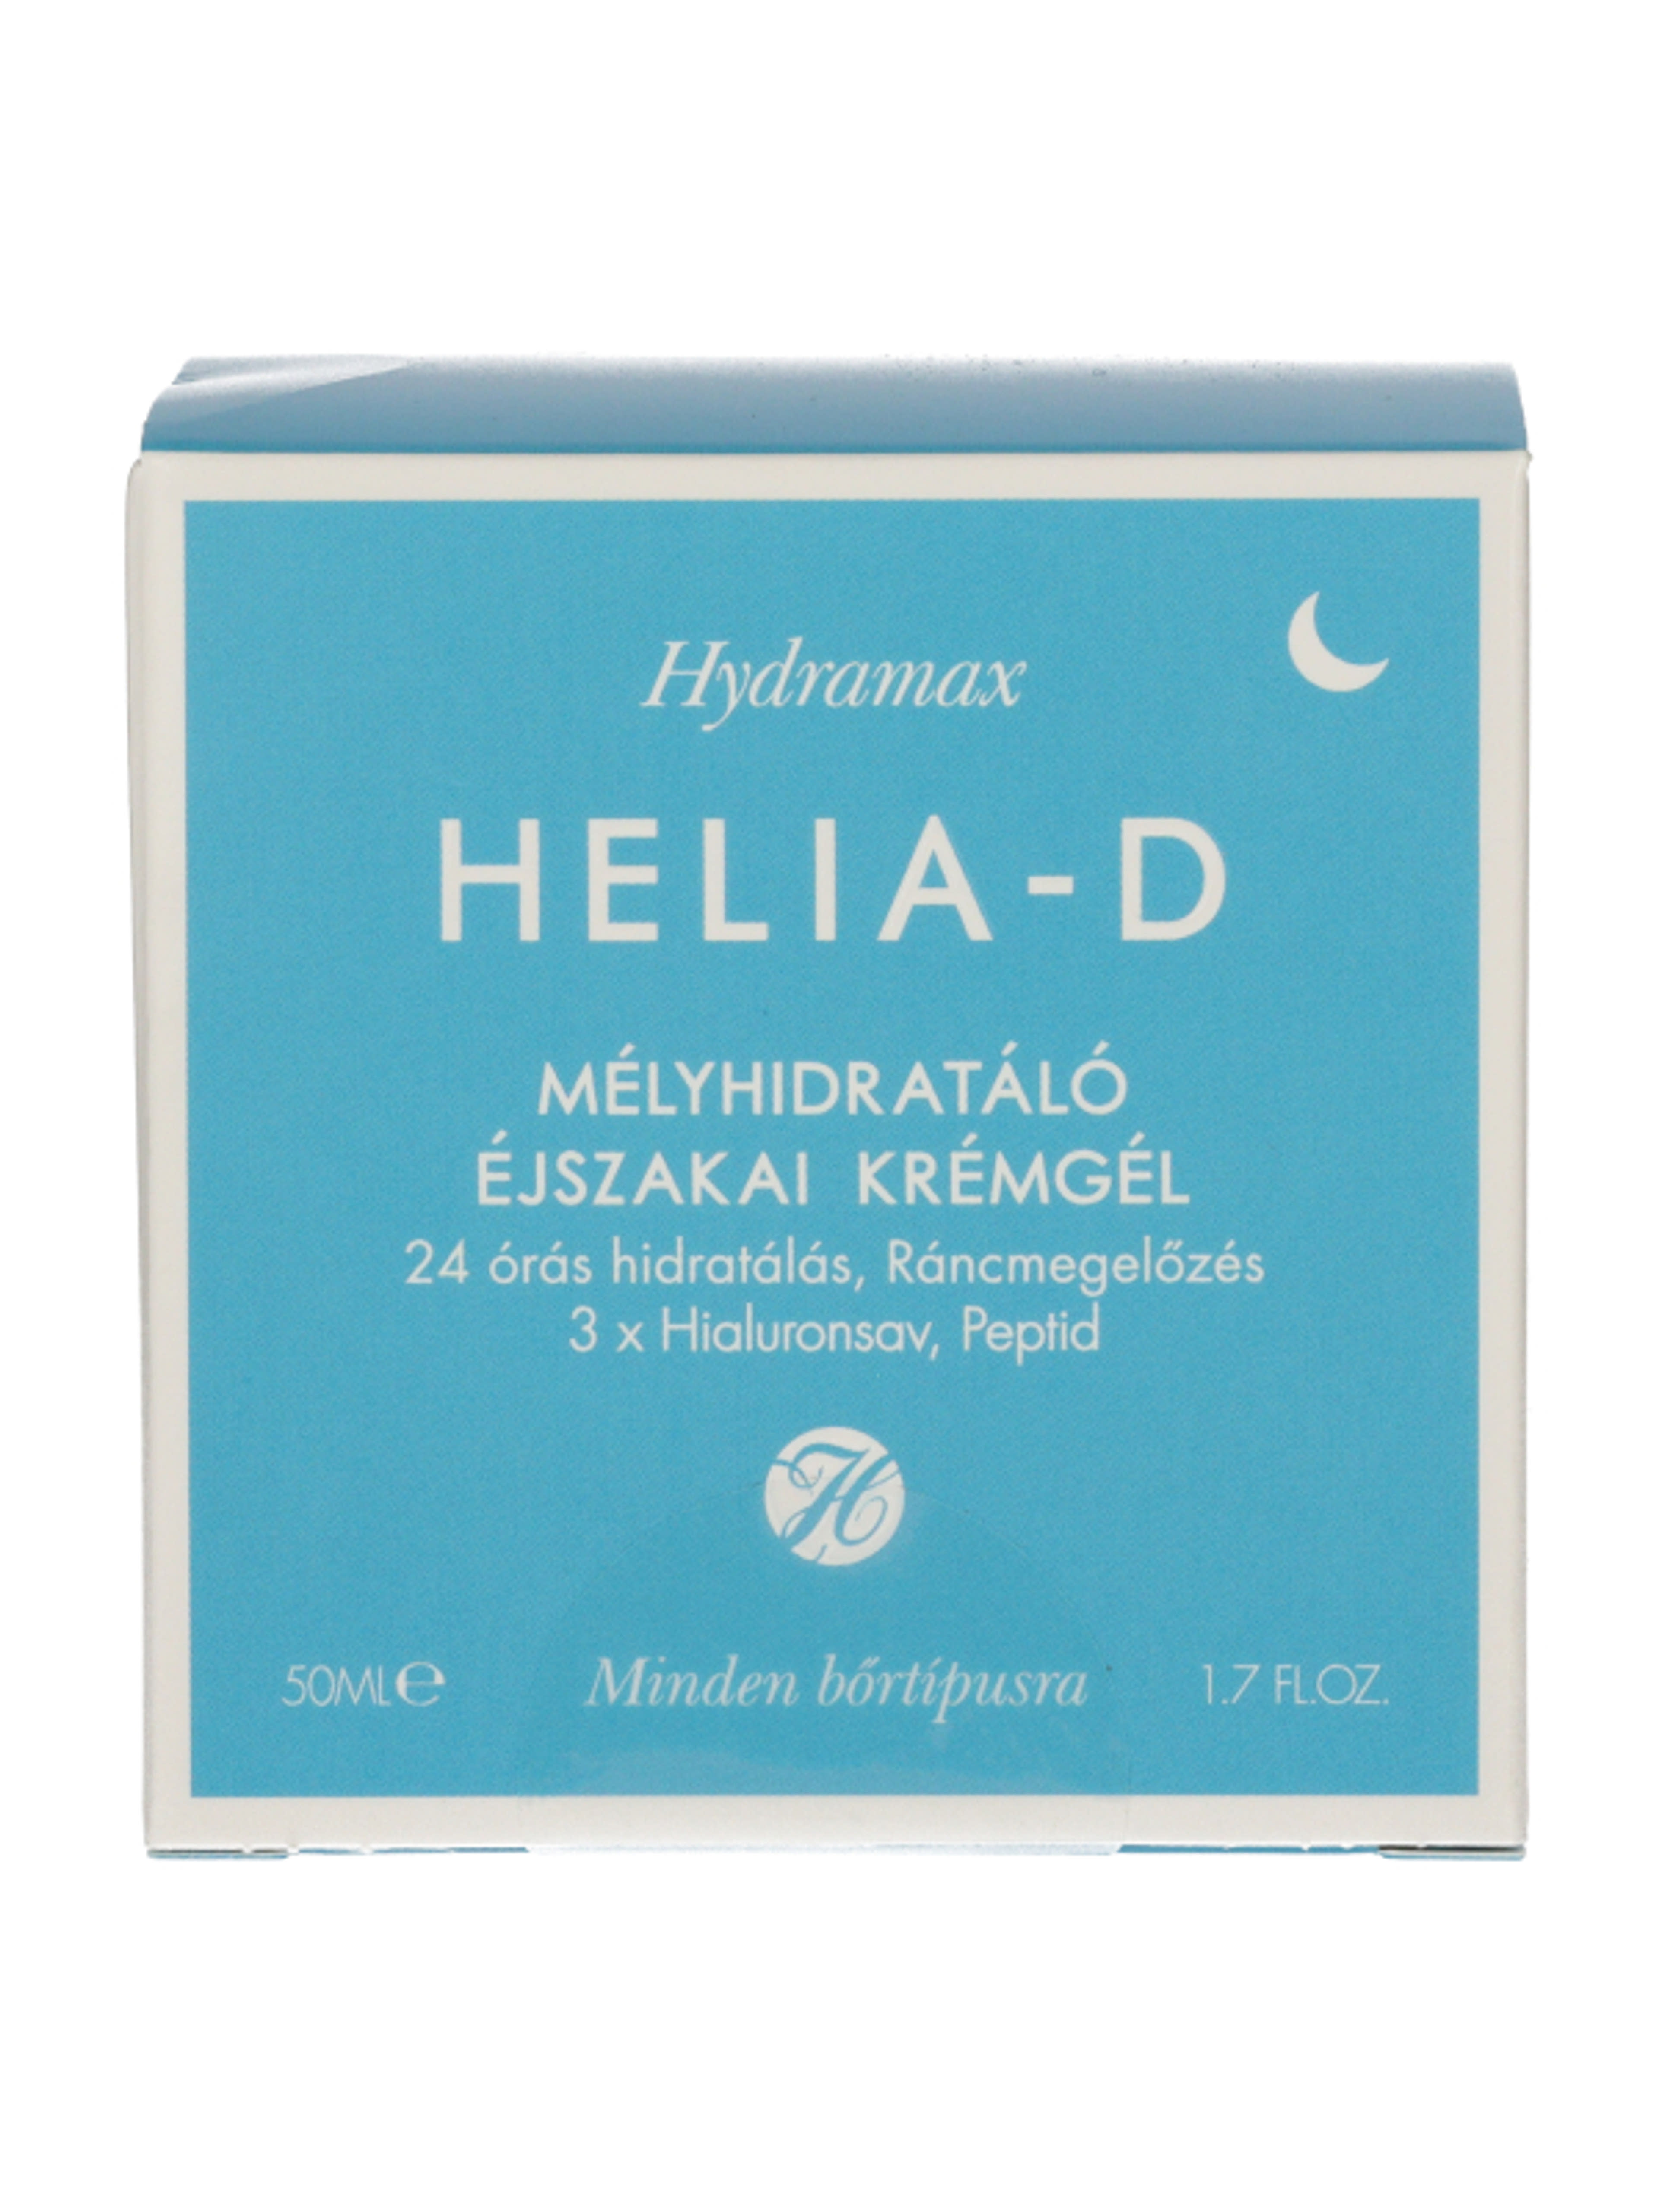 Helia-D Hydramax mélyhidratáló éjszakai krémgél - 50 ml-3